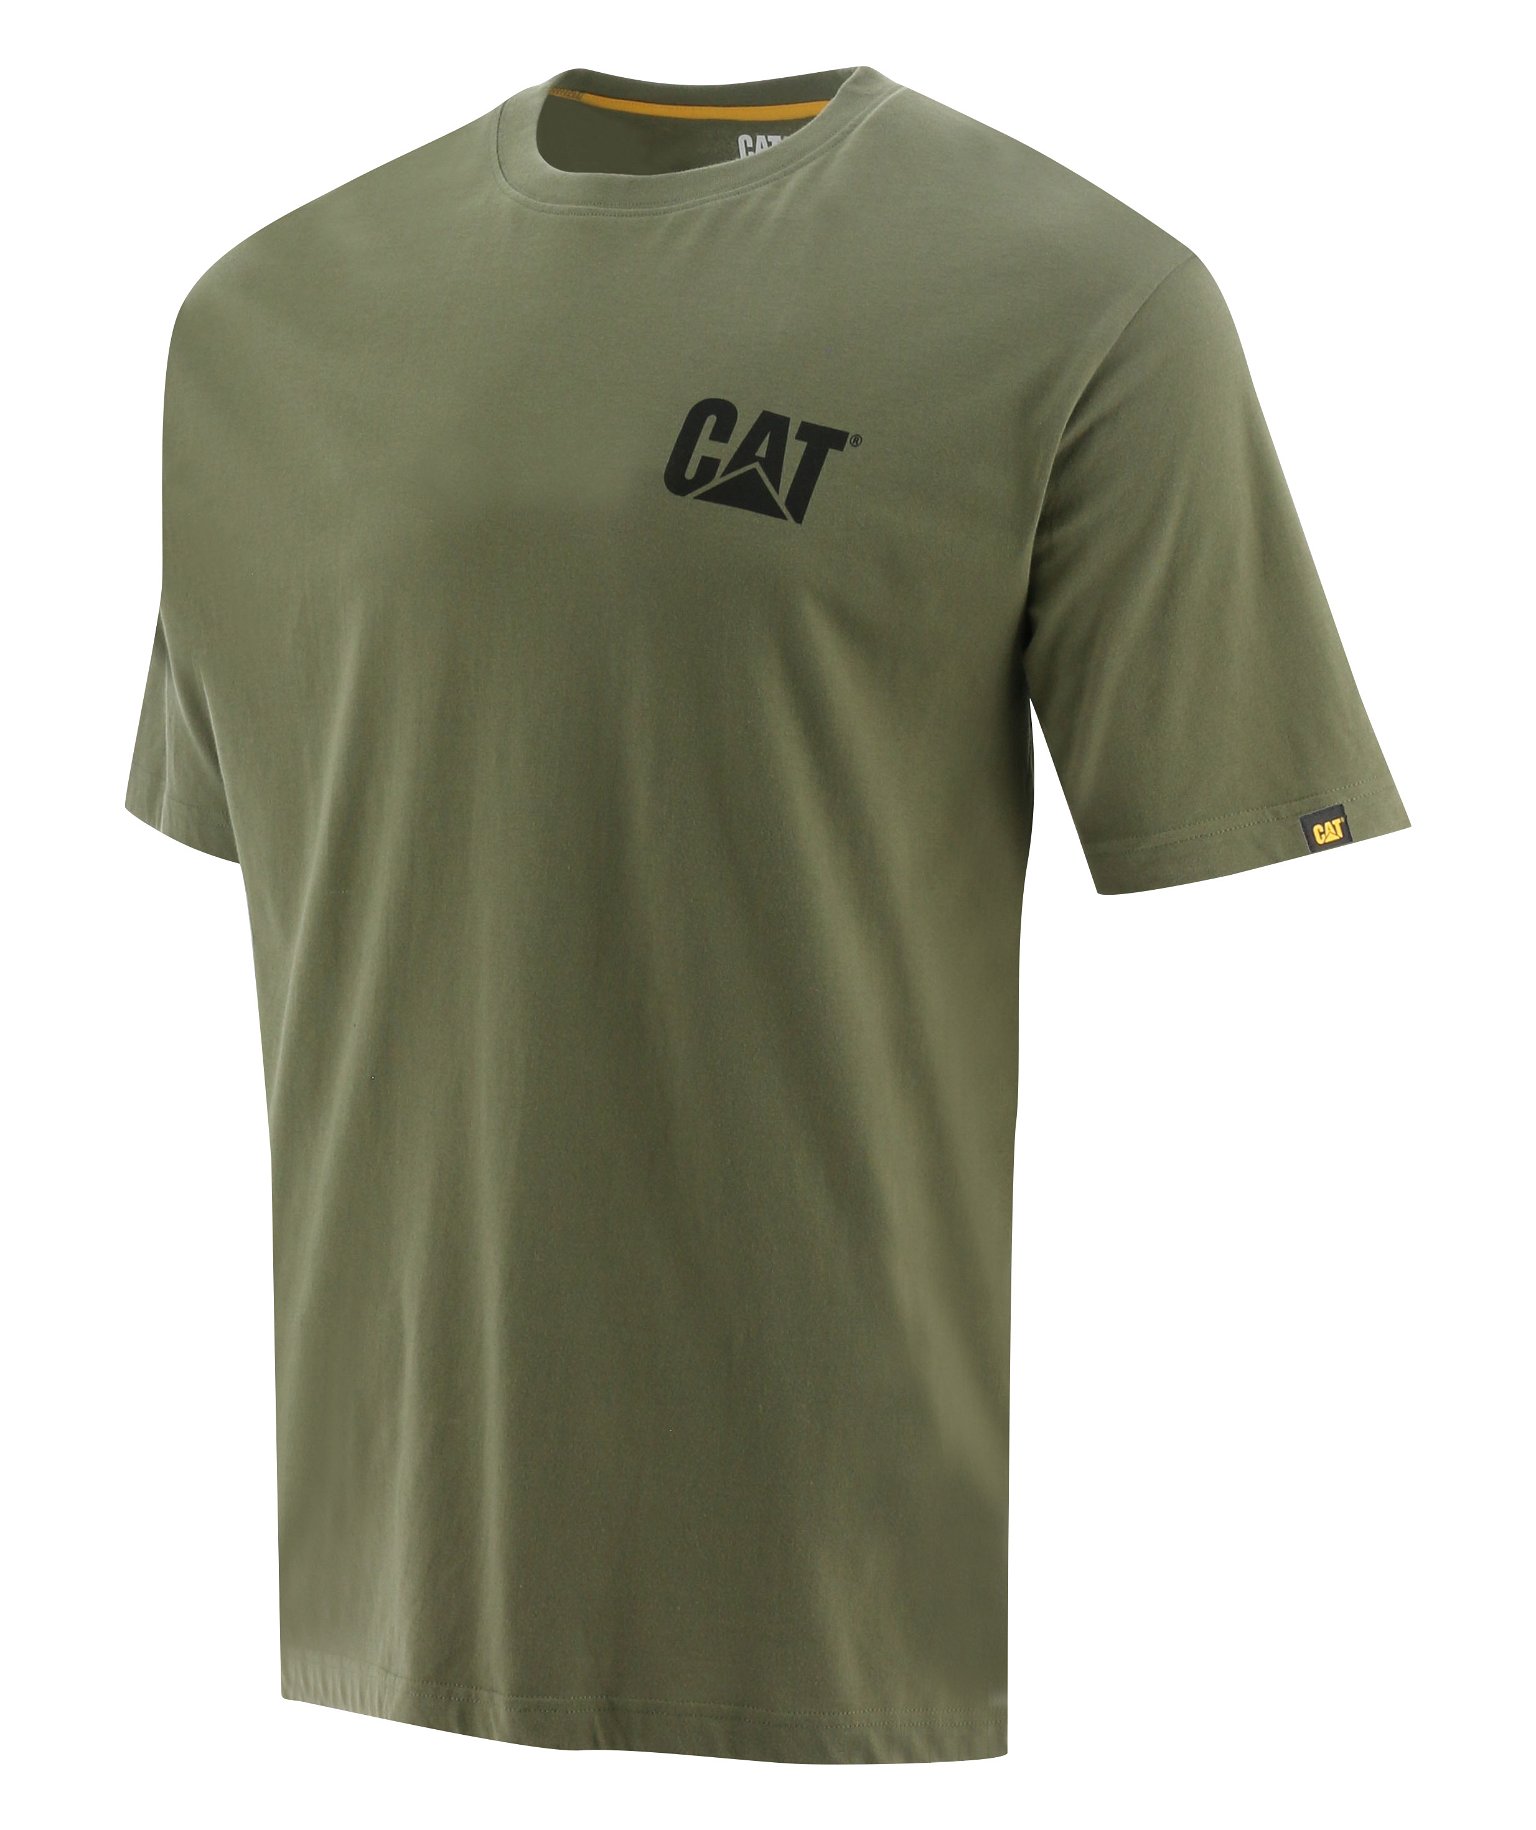 Vyriški marškinėliai trumpomis rankovėmis CAT, chaki spalvos, M dydis